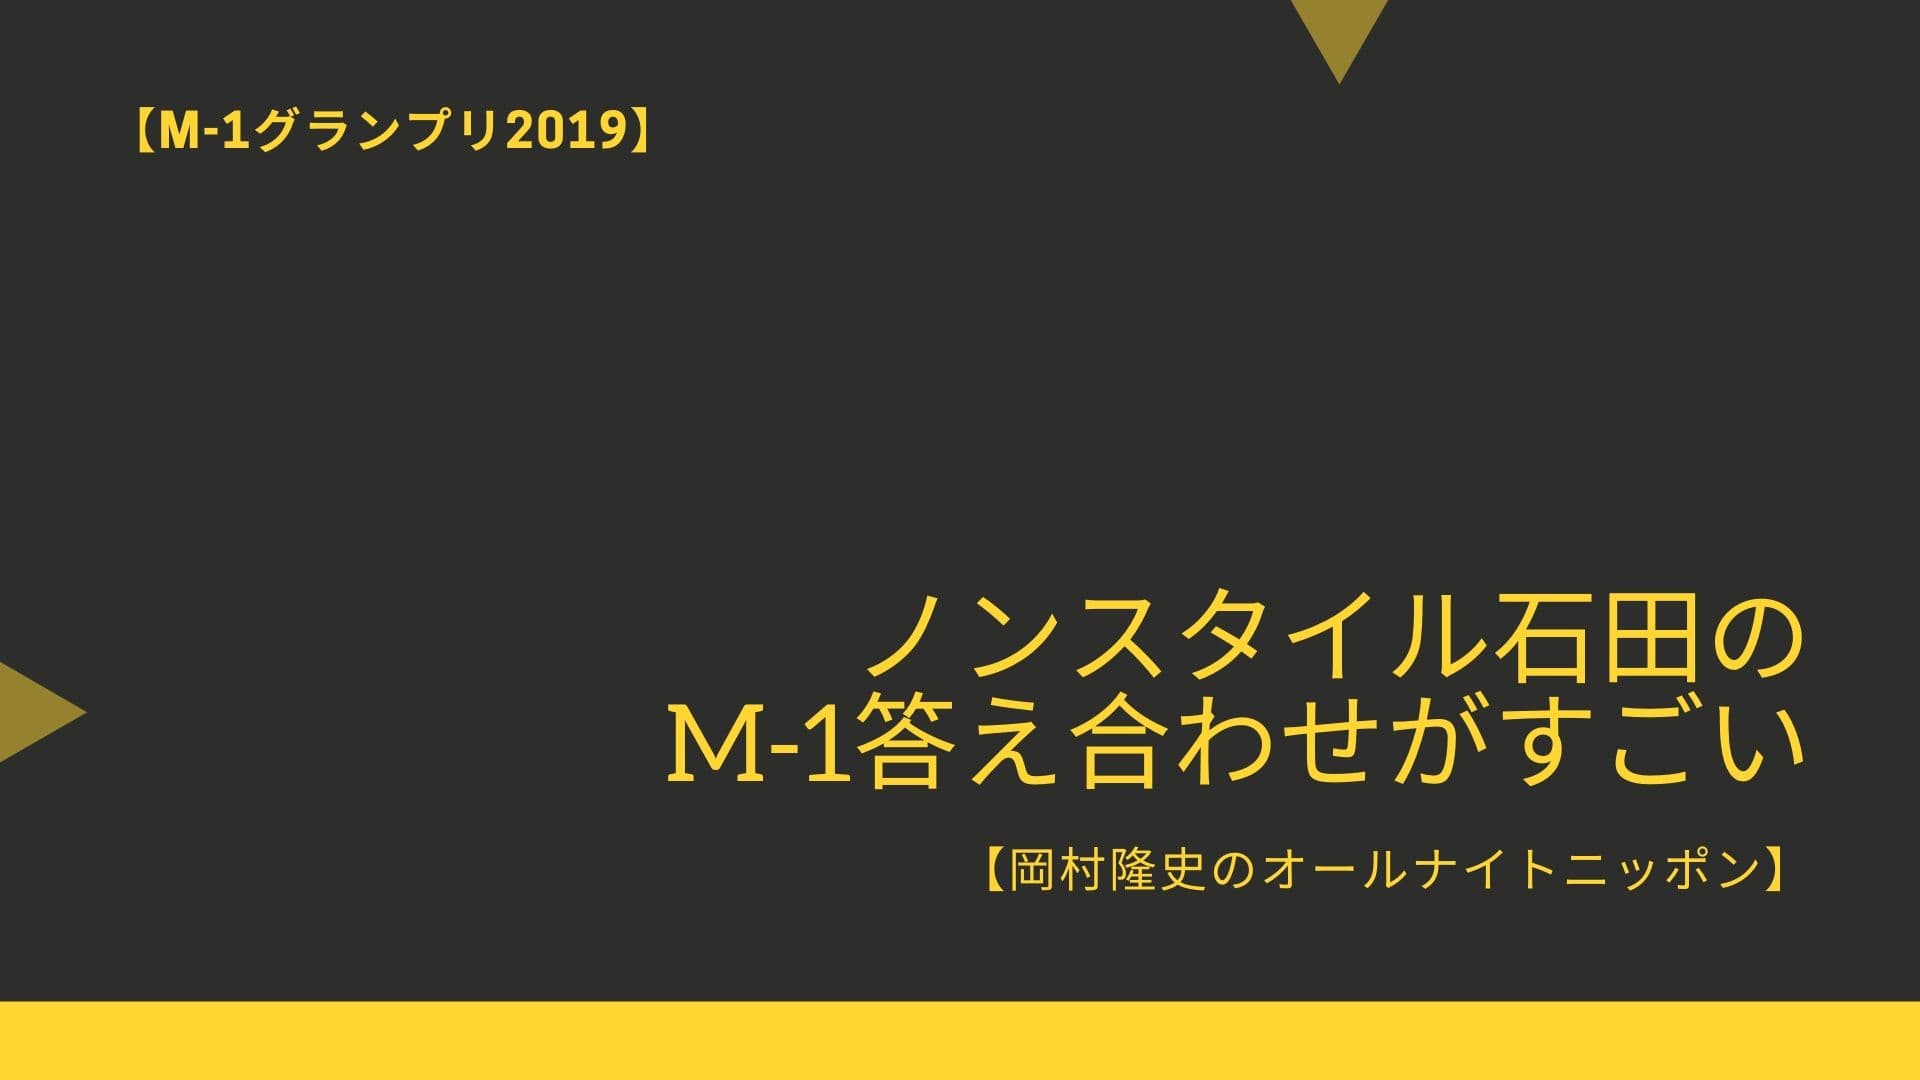 【M-1グランプリ2019】ノンスタイル石田のM-1答え合わせがすごい【岡村隆史のオールナイトニッポン】